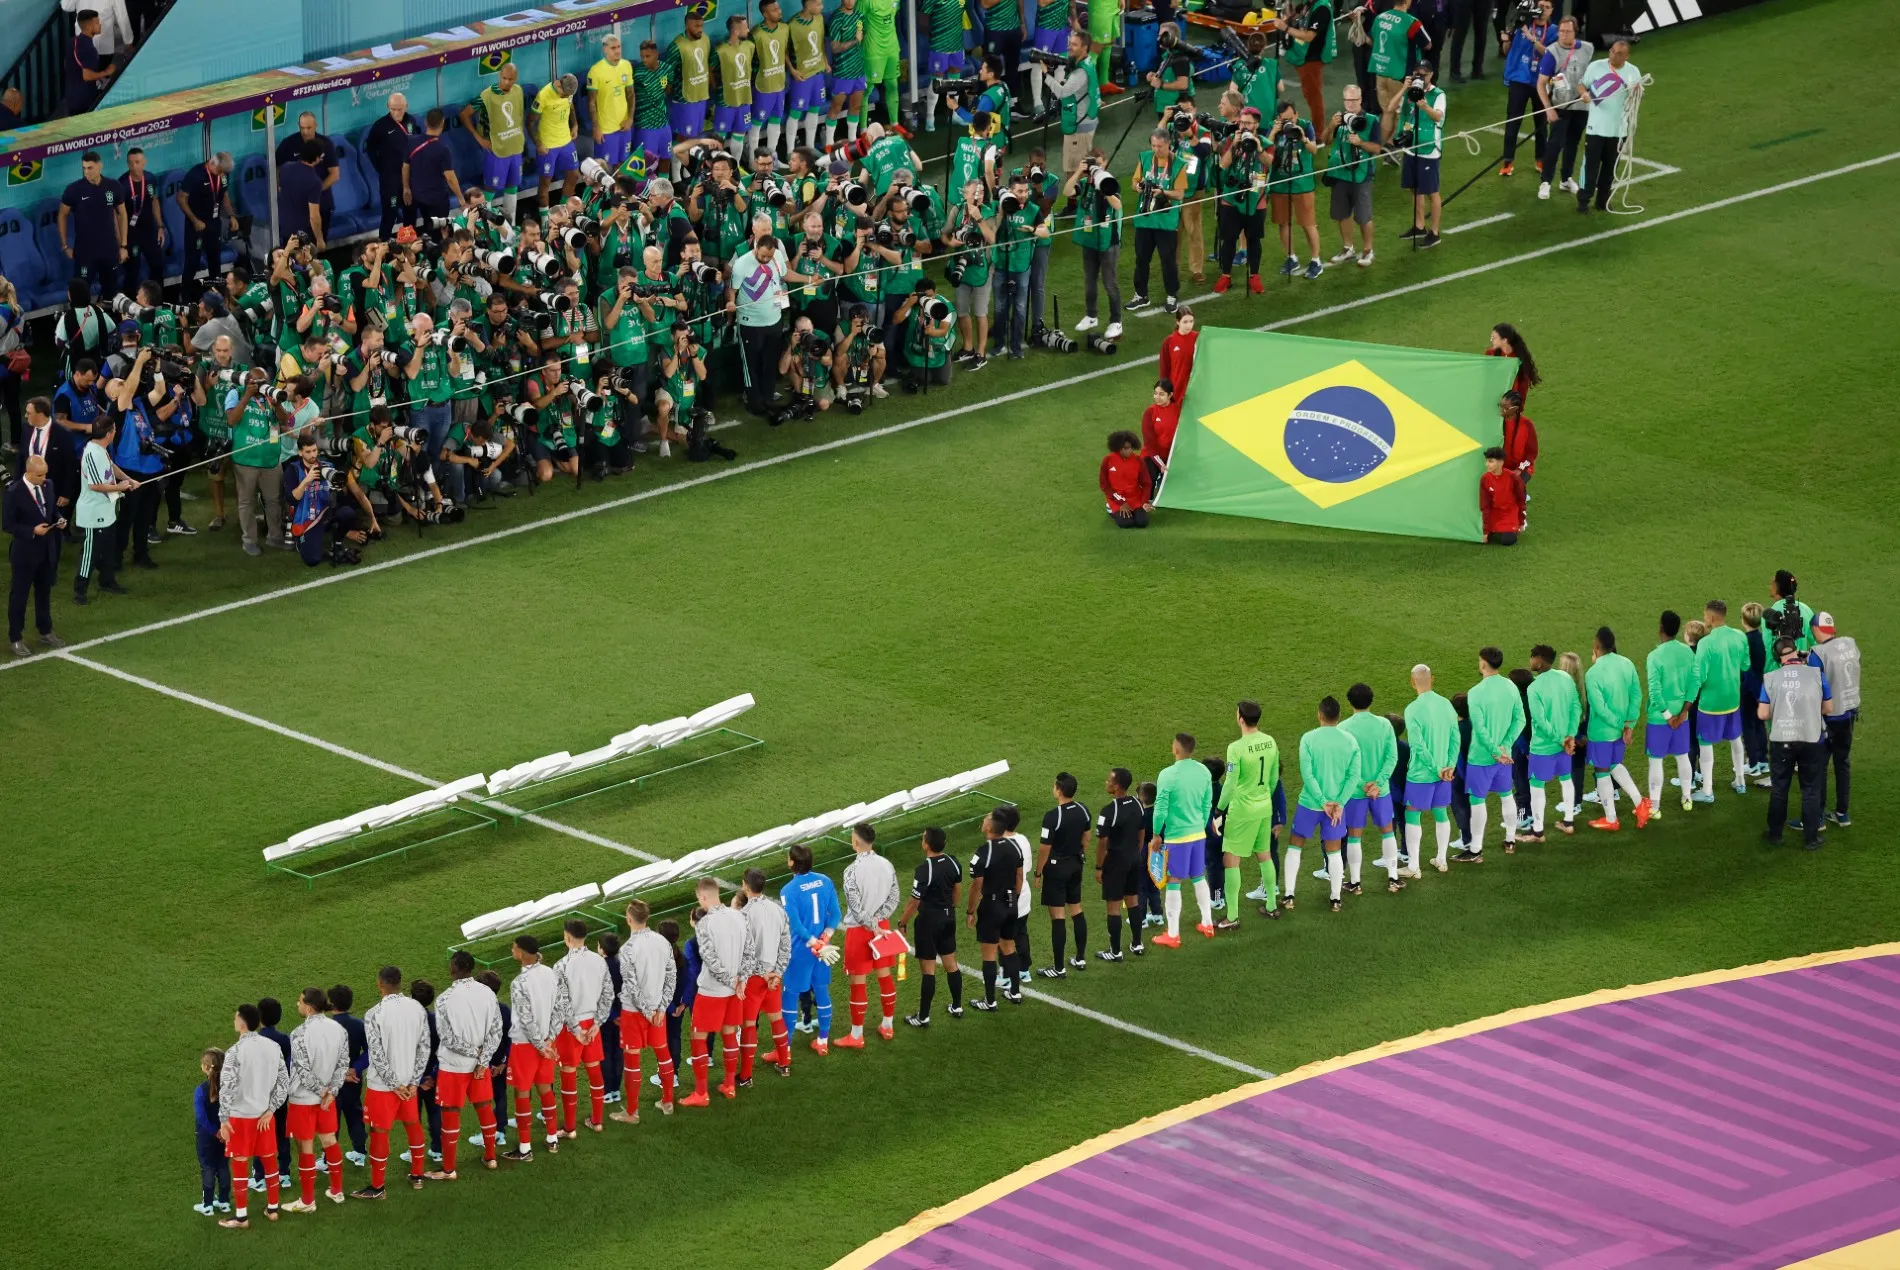 Jogo do Brasil oitavas de final: veja cenários - 28/11/2022 - Esporte -  Folha